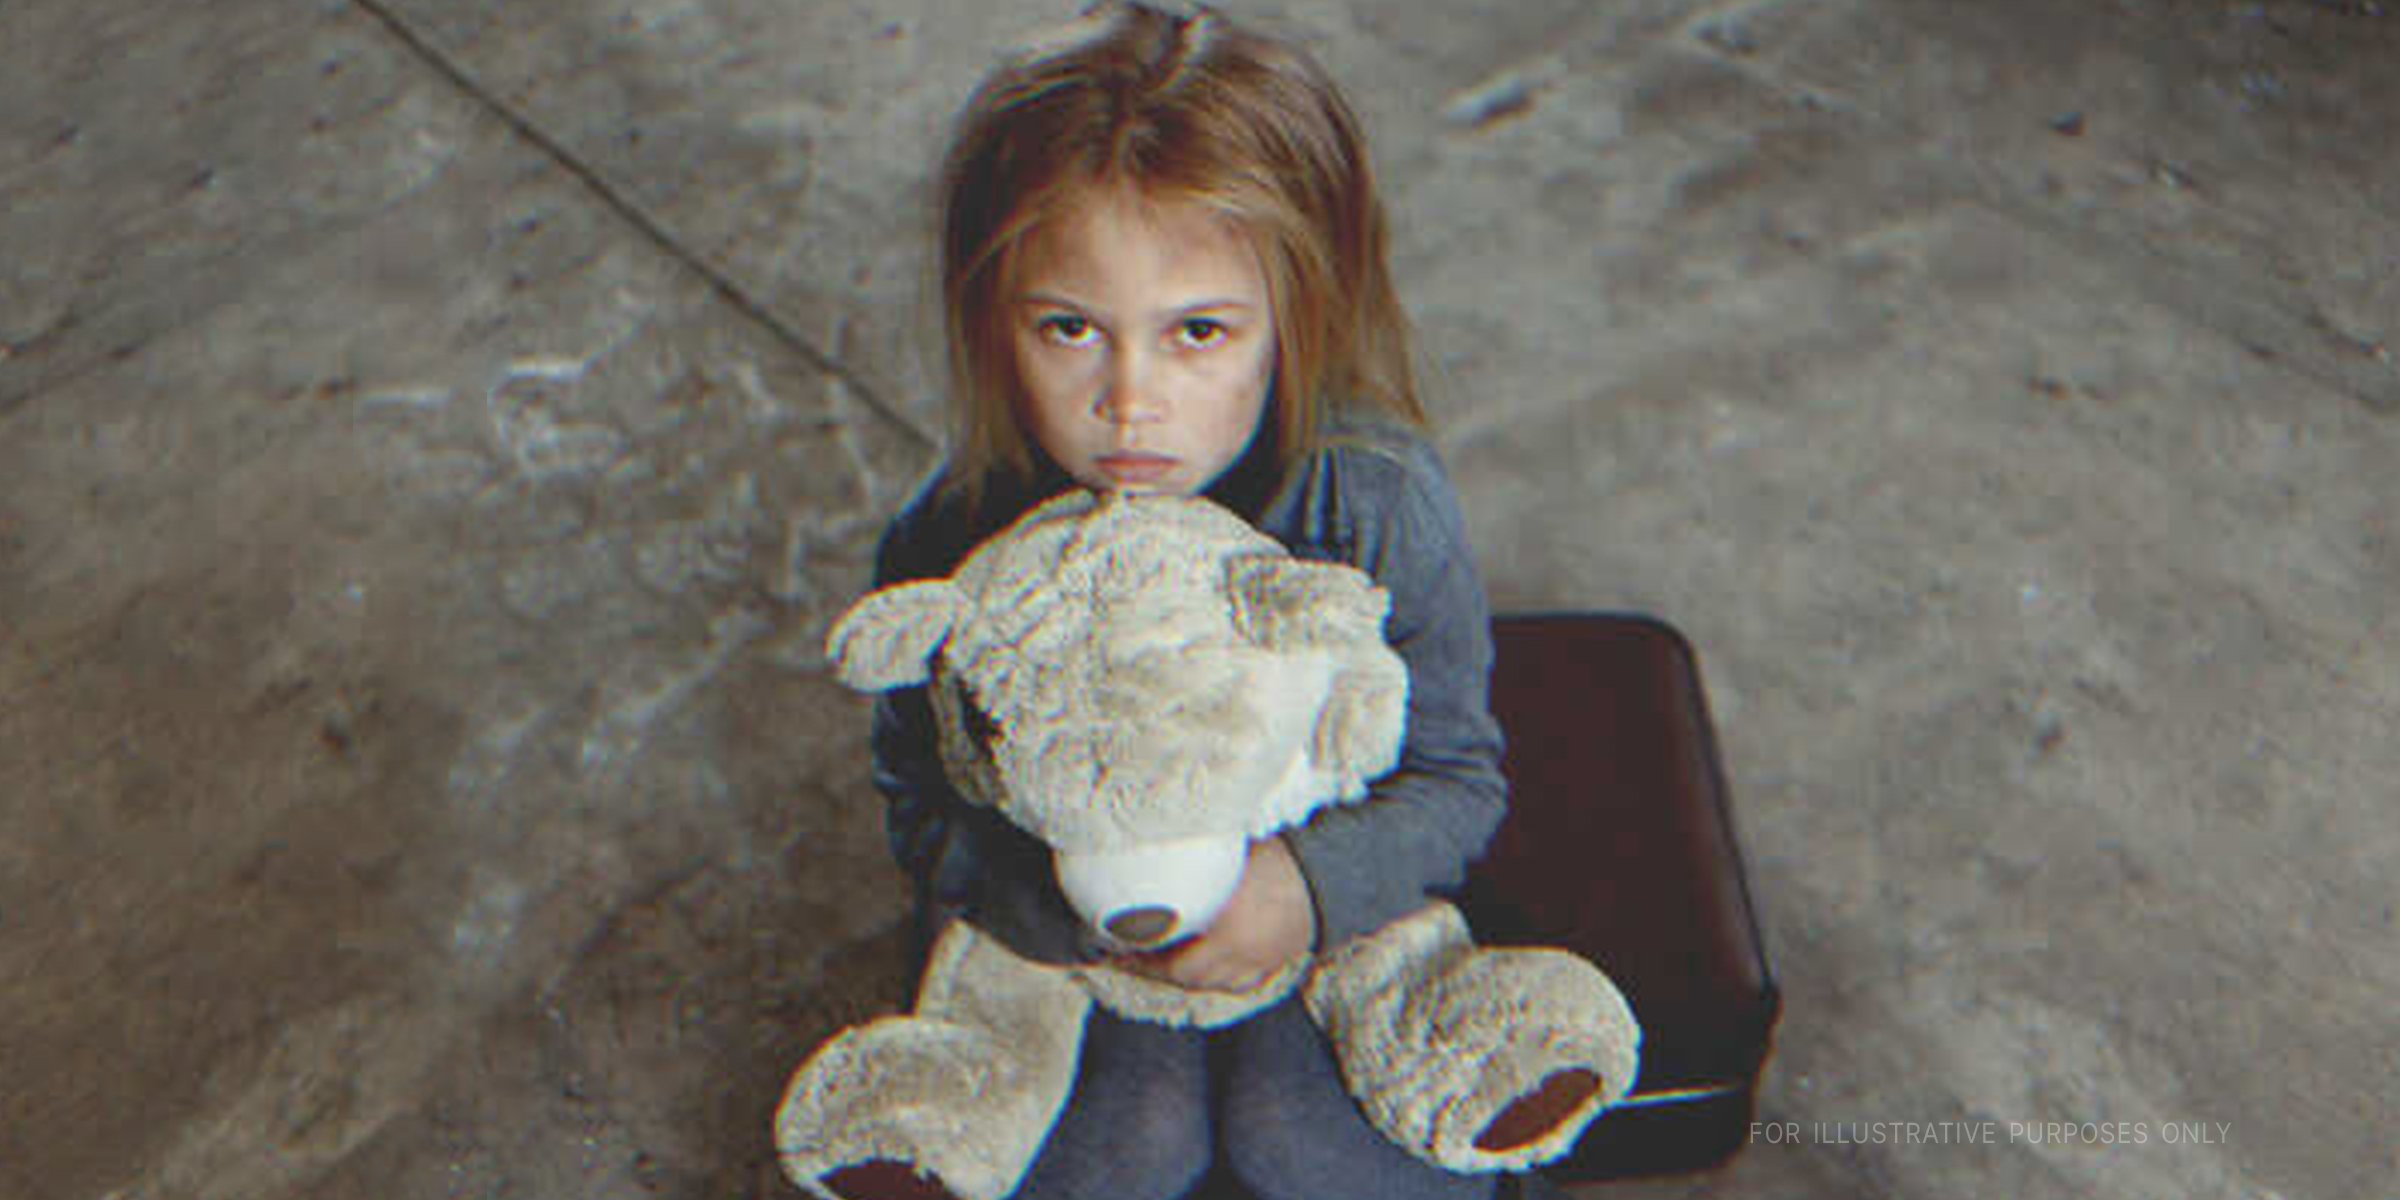 Mädchen umarmt einen Teddybär | Quelle: Shutterstock